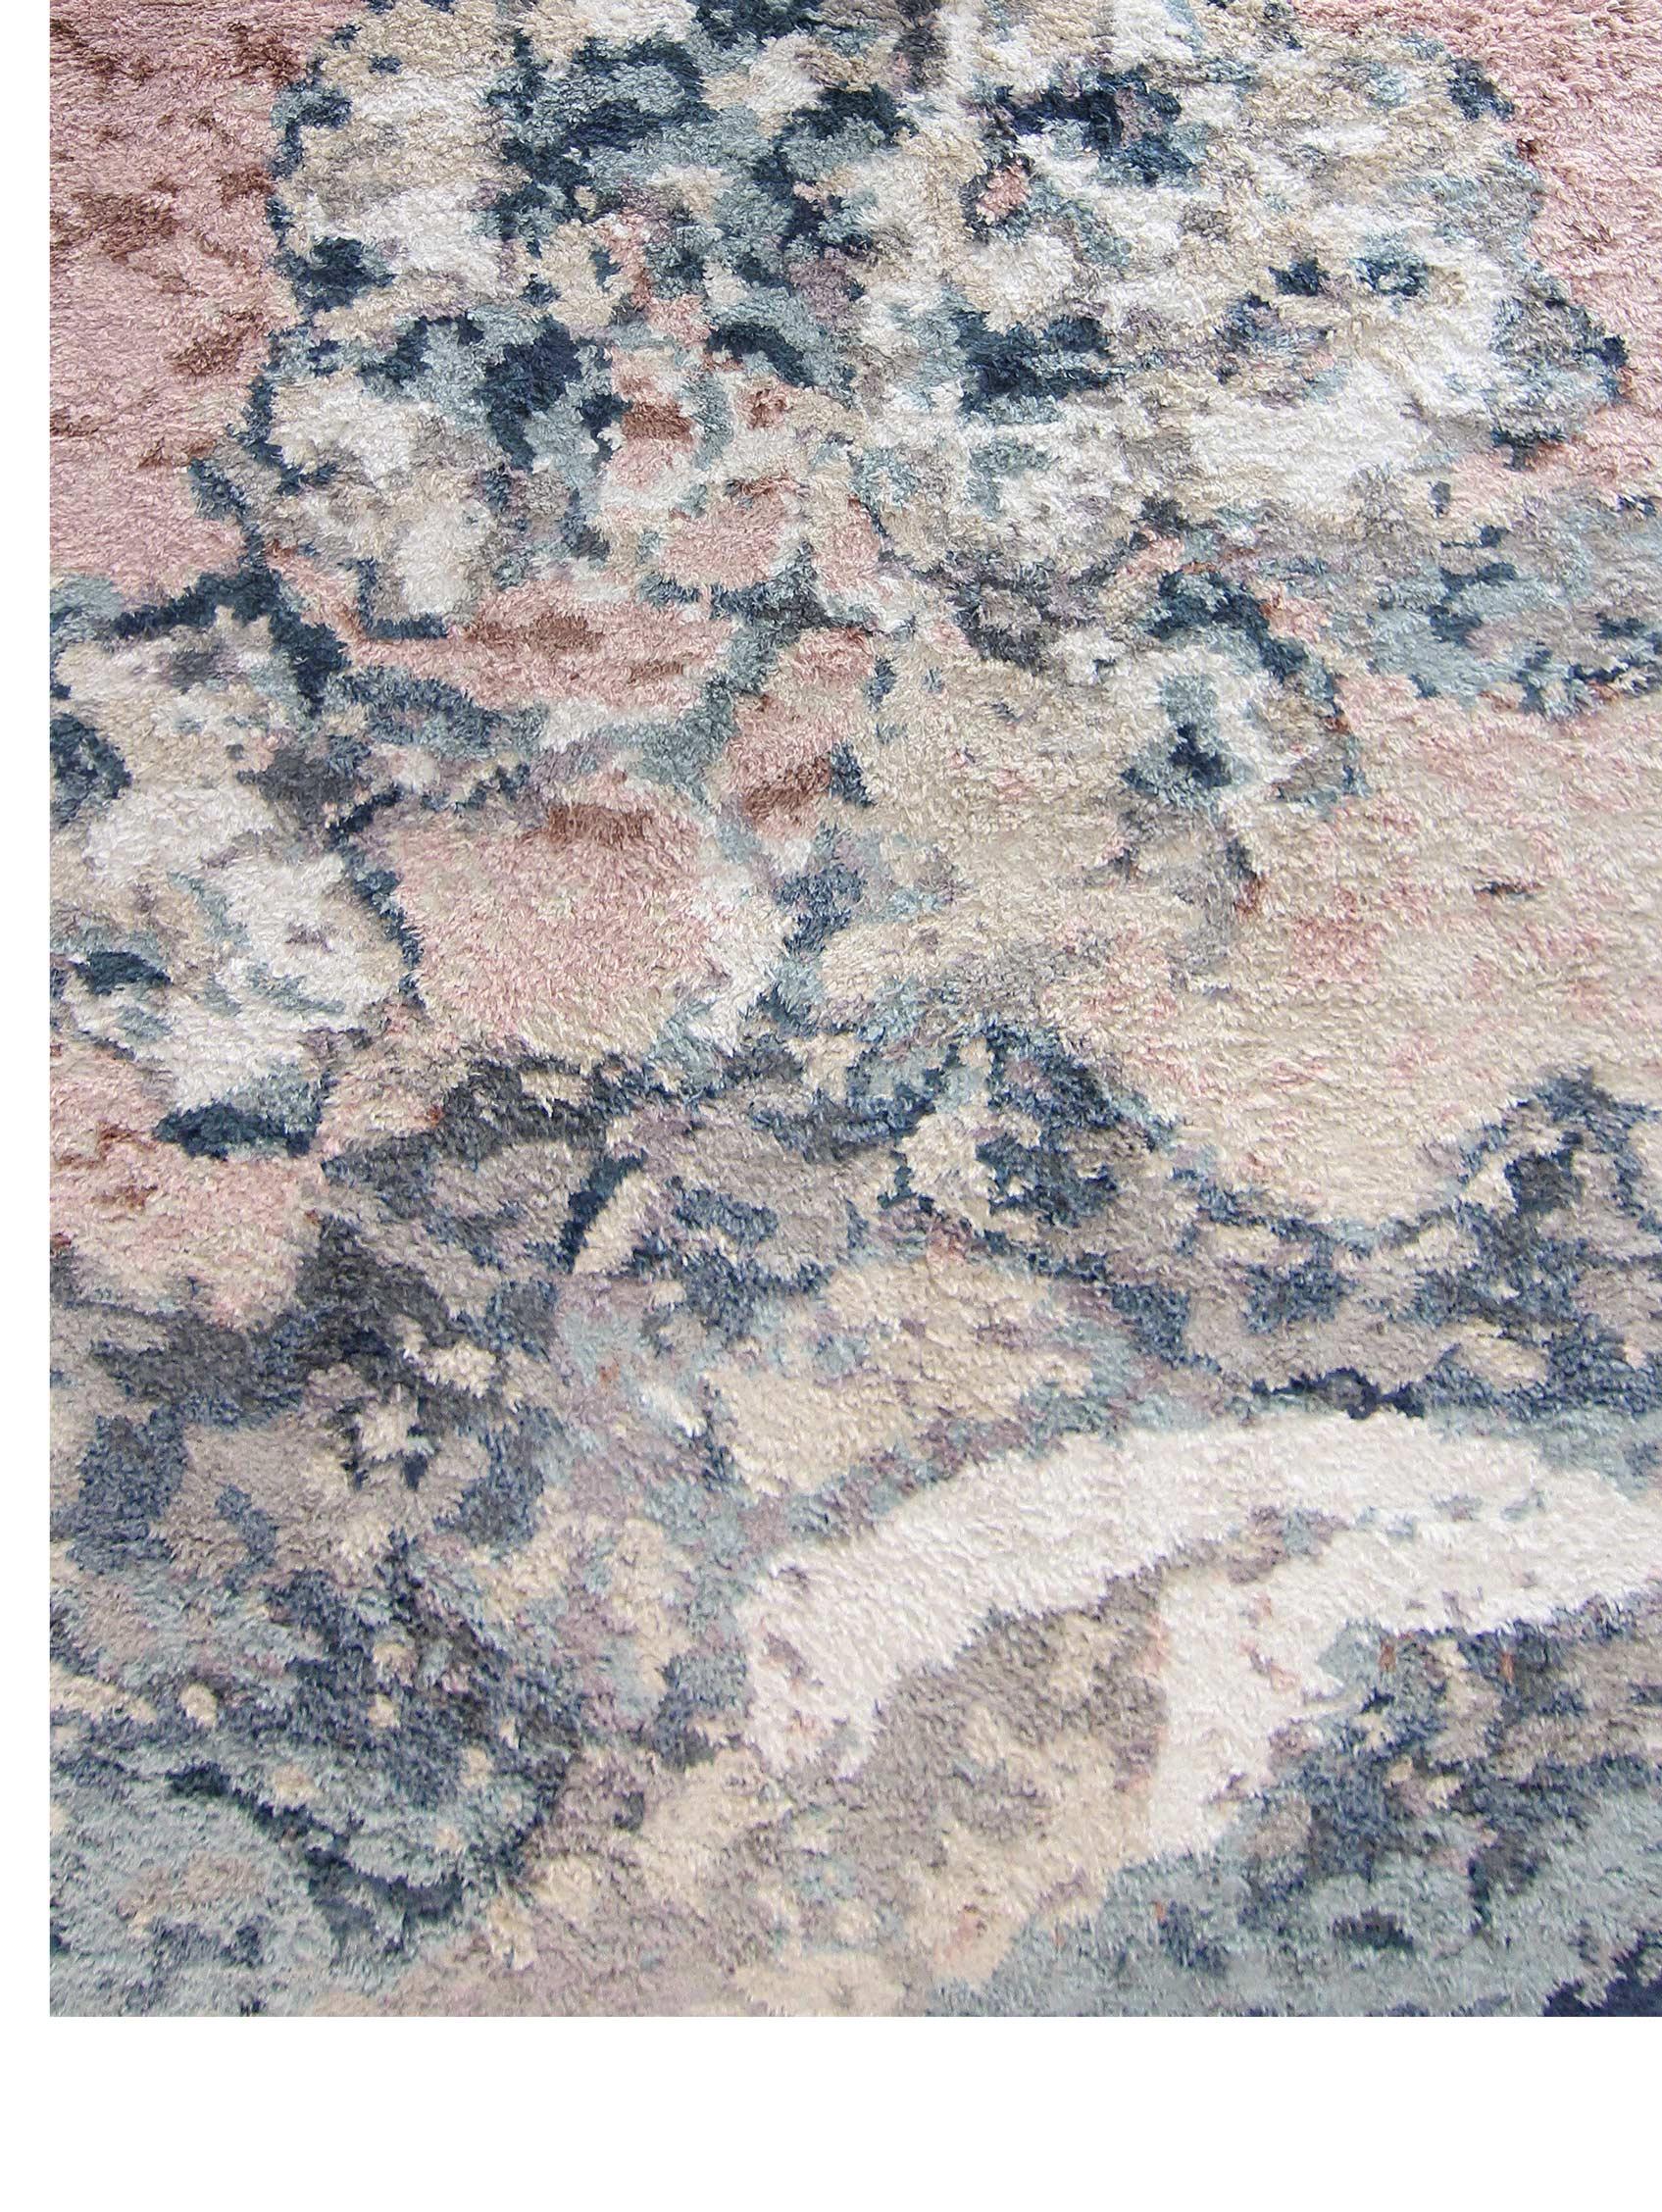 Balboa Handgeknüpfter teppich von Eskayel
Abmessungen: T9.6' x H13'
Pfahlhöhe: 30 mm
MATERIALIEN: 50% Bambus-Seide, 50% Pashmina

Die handgeknüpften Teppiche von Eskayel werden auf Bestellung gewebt und können in verschiedenen Größen, Farben,